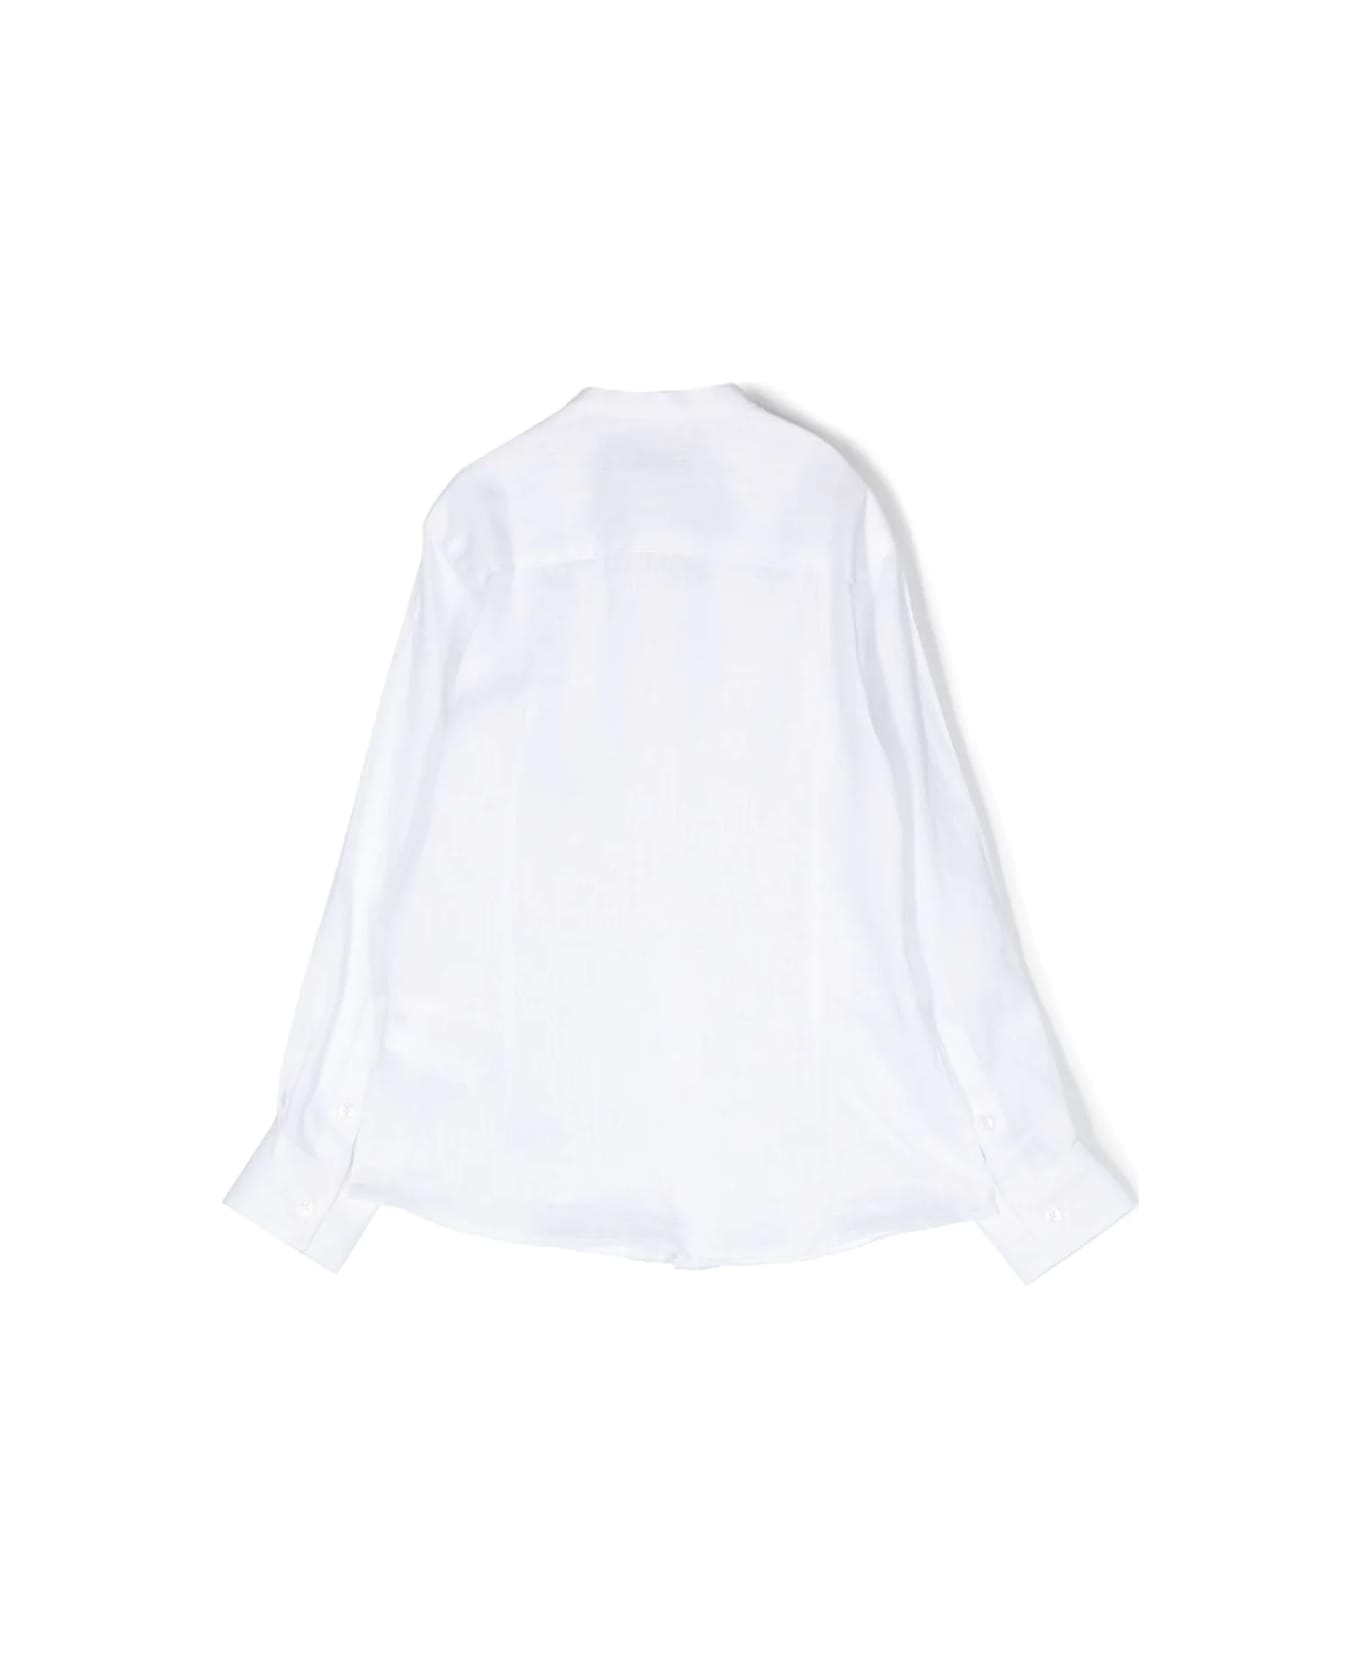 Paolo Pecora Korean Shirt - White シャツ